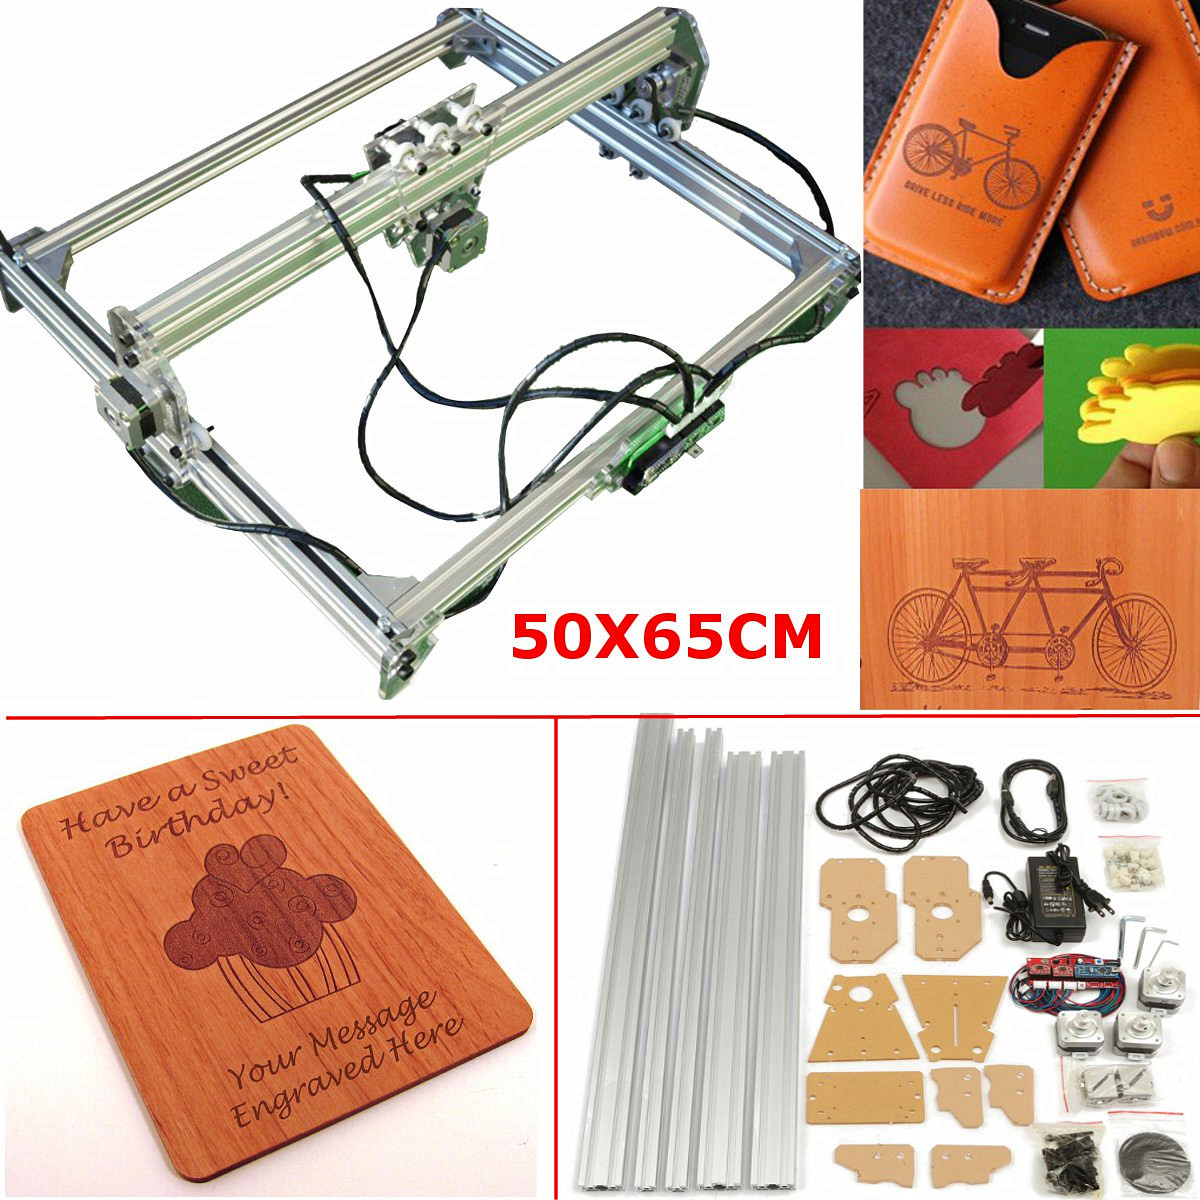 Motor Kit Without Laser Engraver Machine